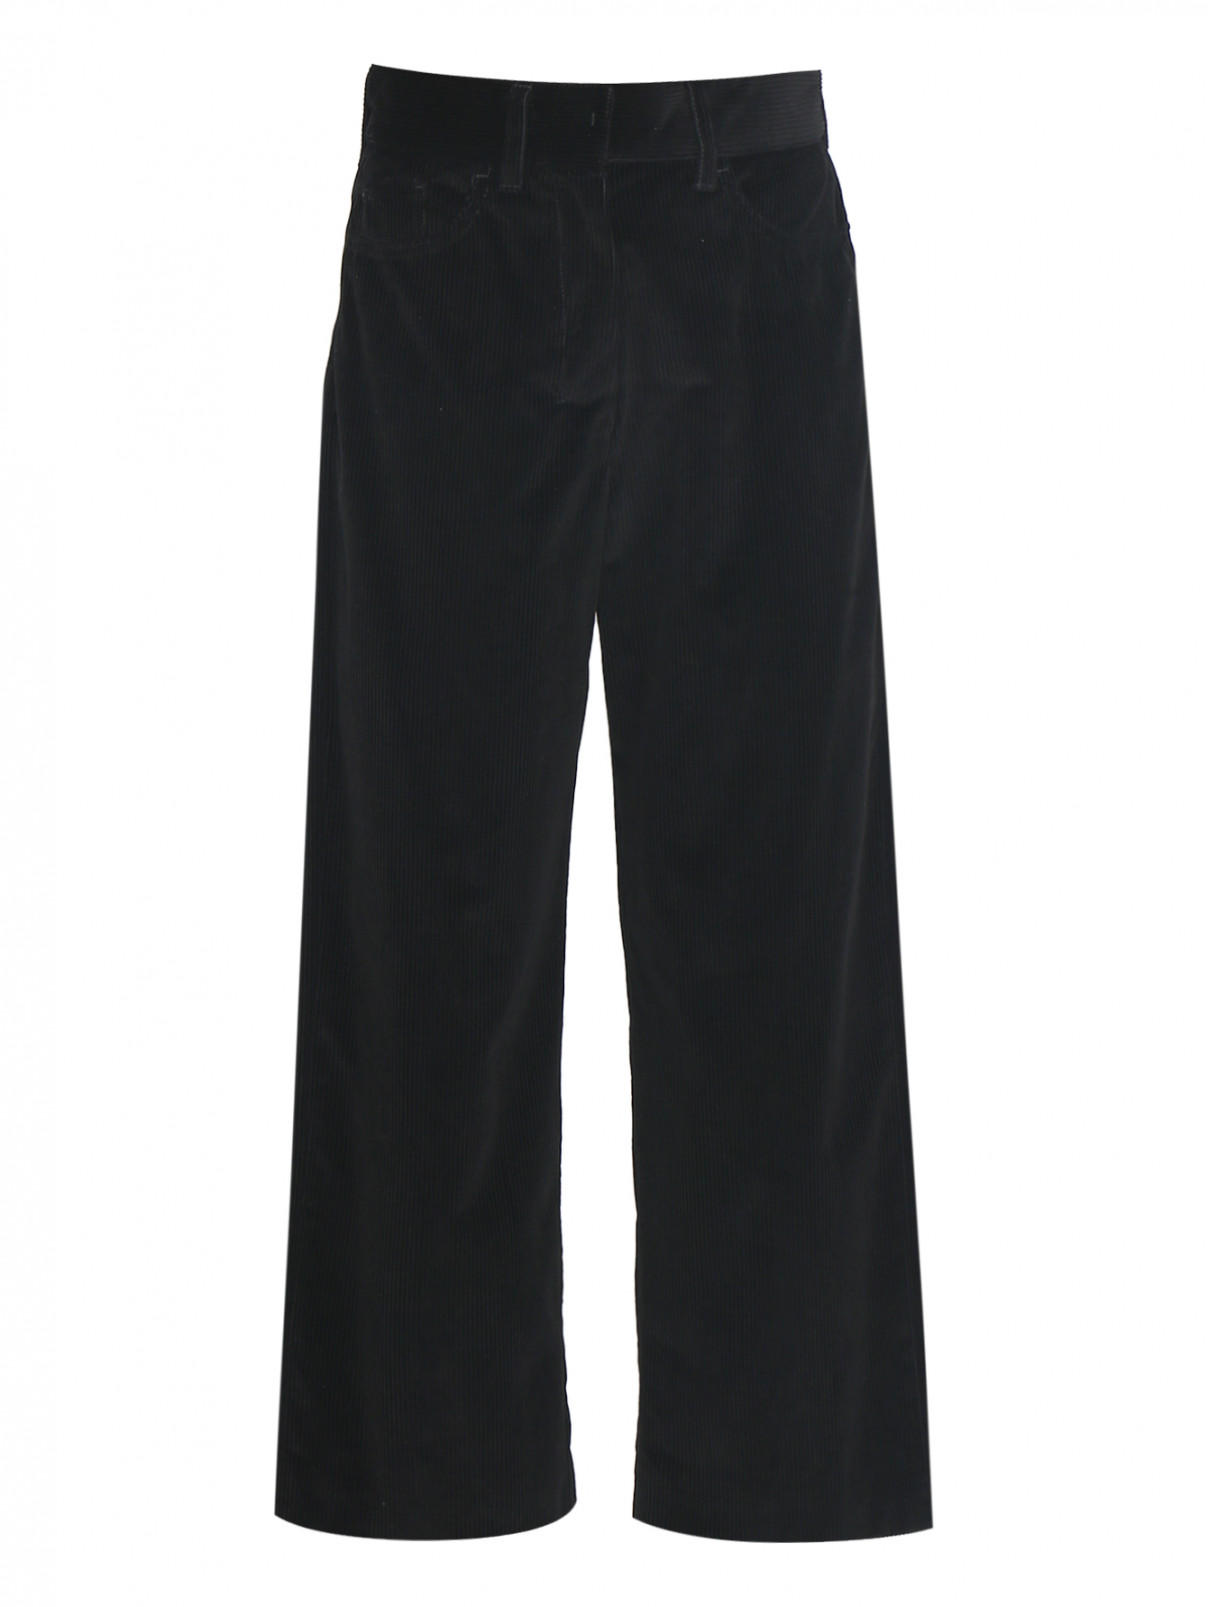 Вельветовые брюки с карманами Max Mara  –  Общий вид  – Цвет:  Черный